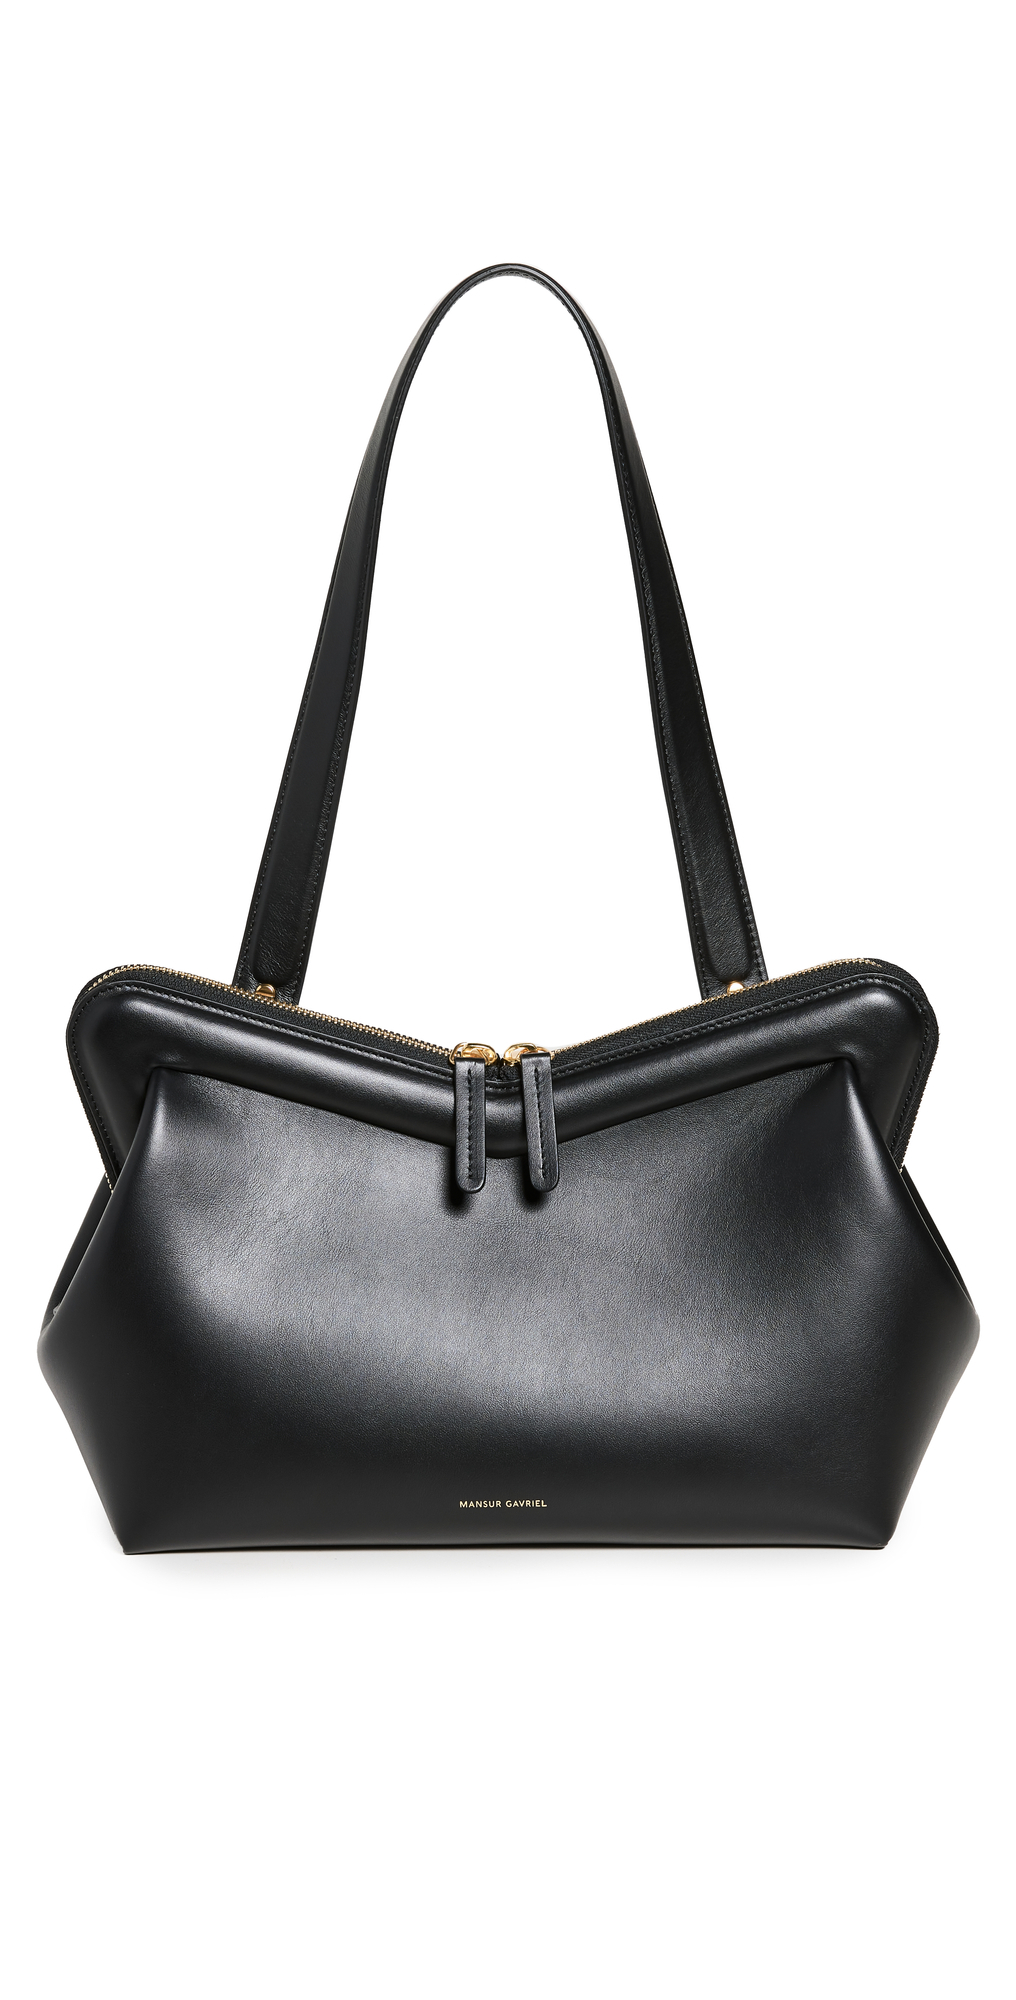 Mansur Gavriel Medium Frame Bag in black